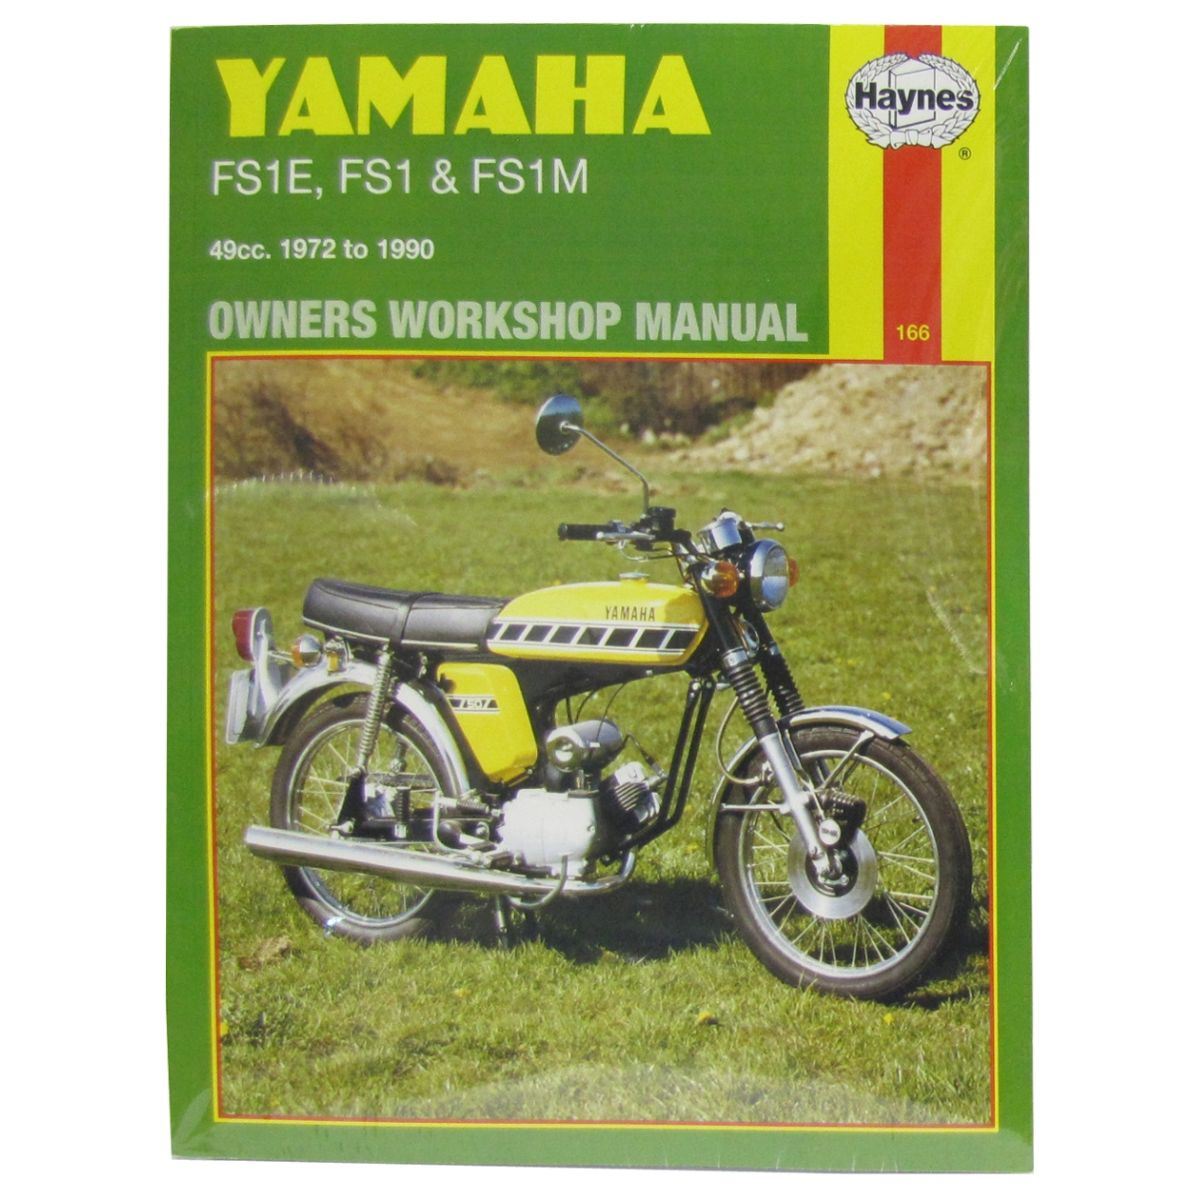 Workshop Manual Yamaha FS1E All Models 